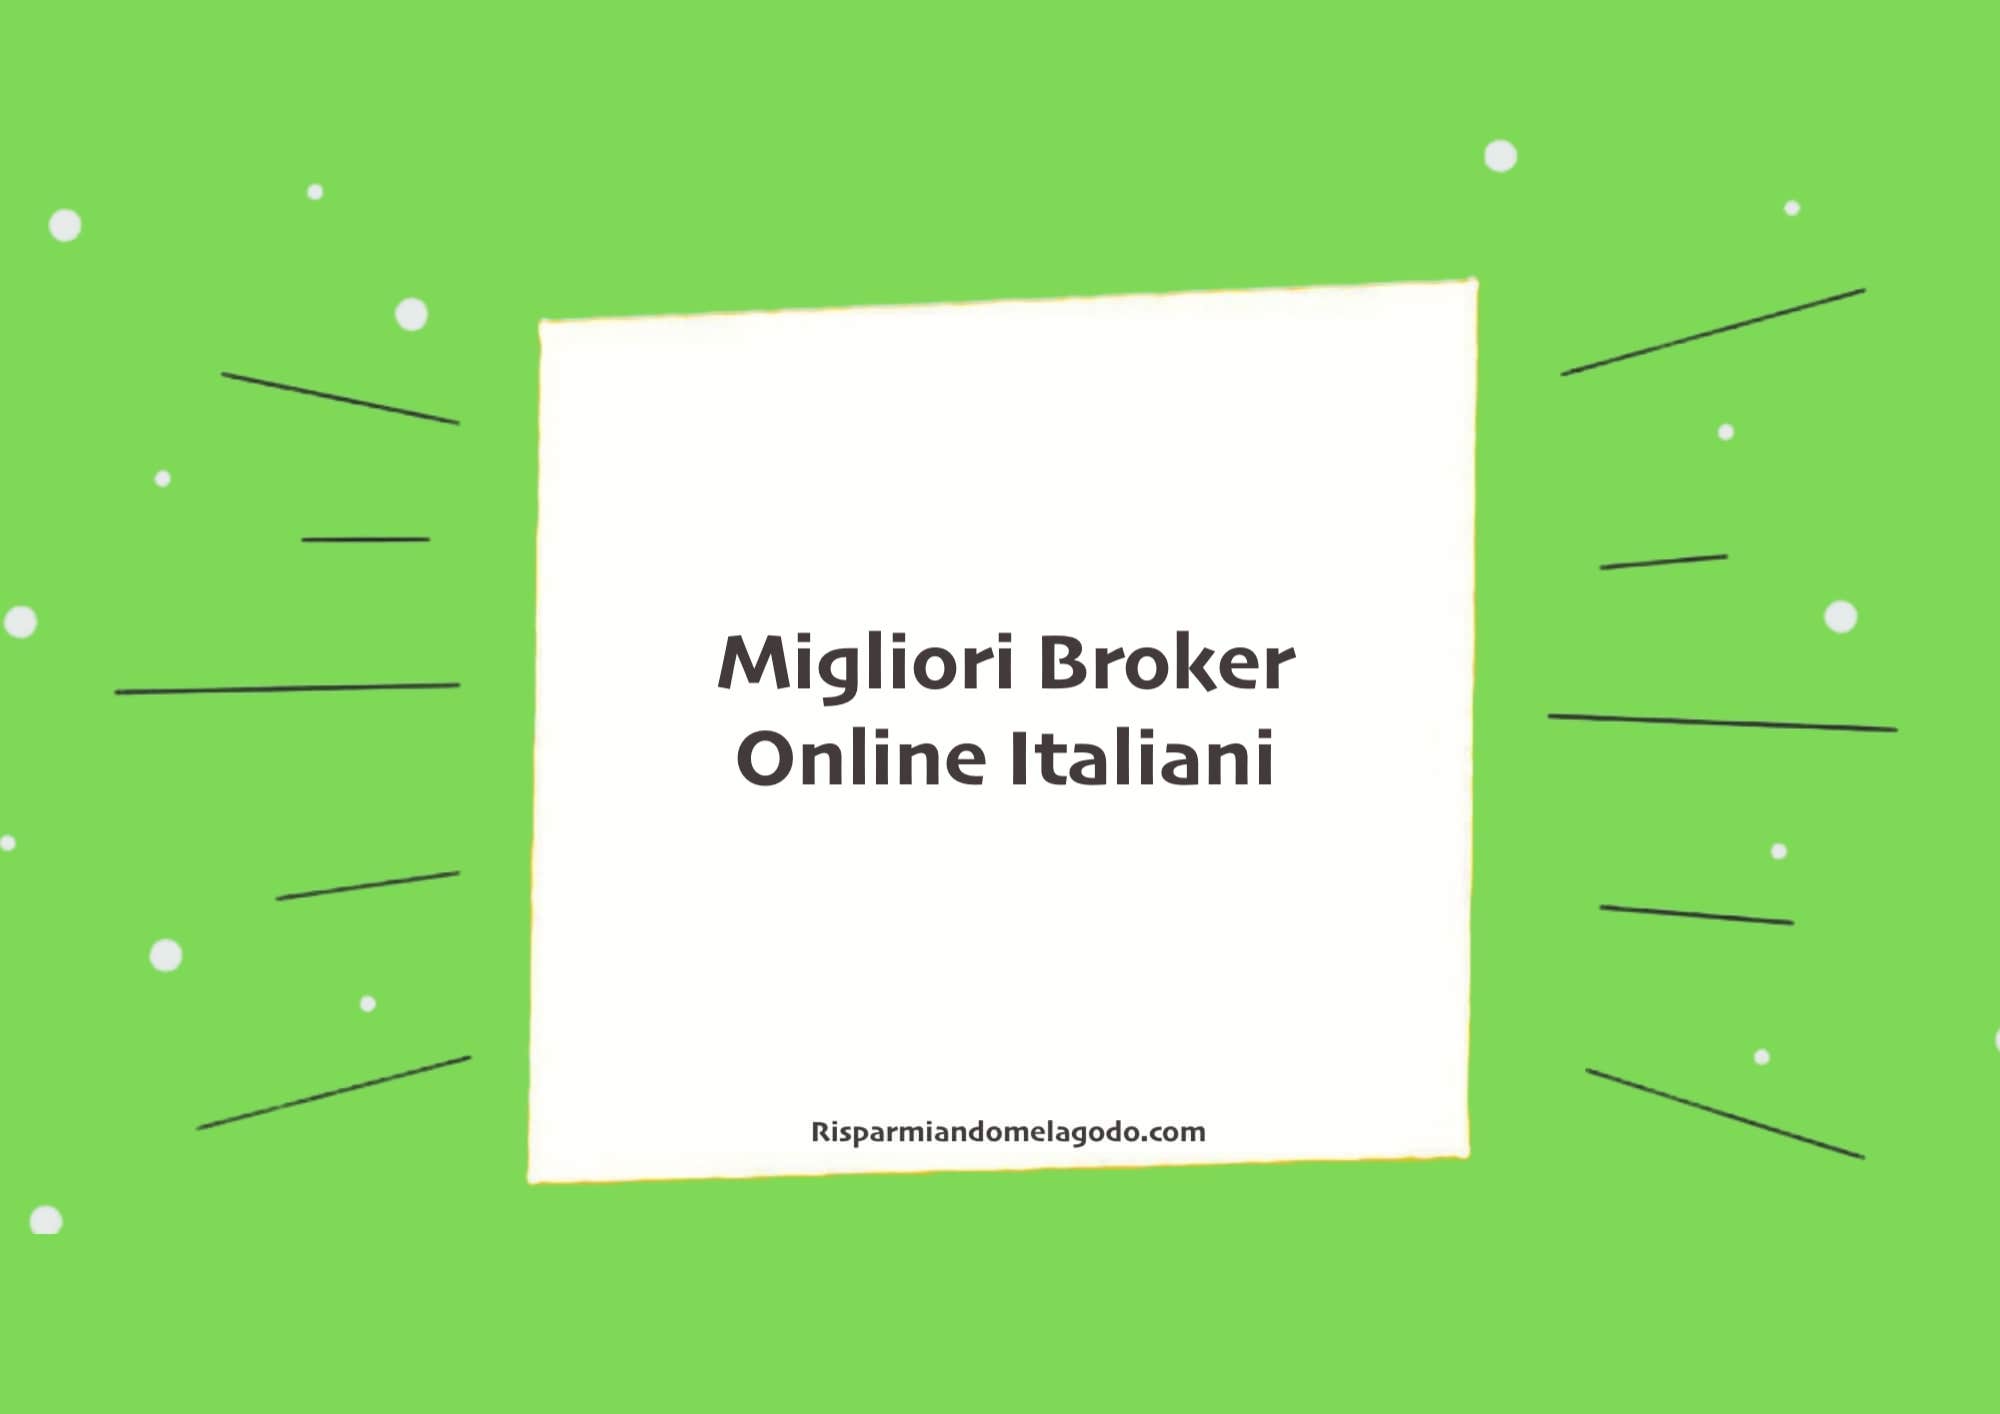 Migliori Broker Online Italiani